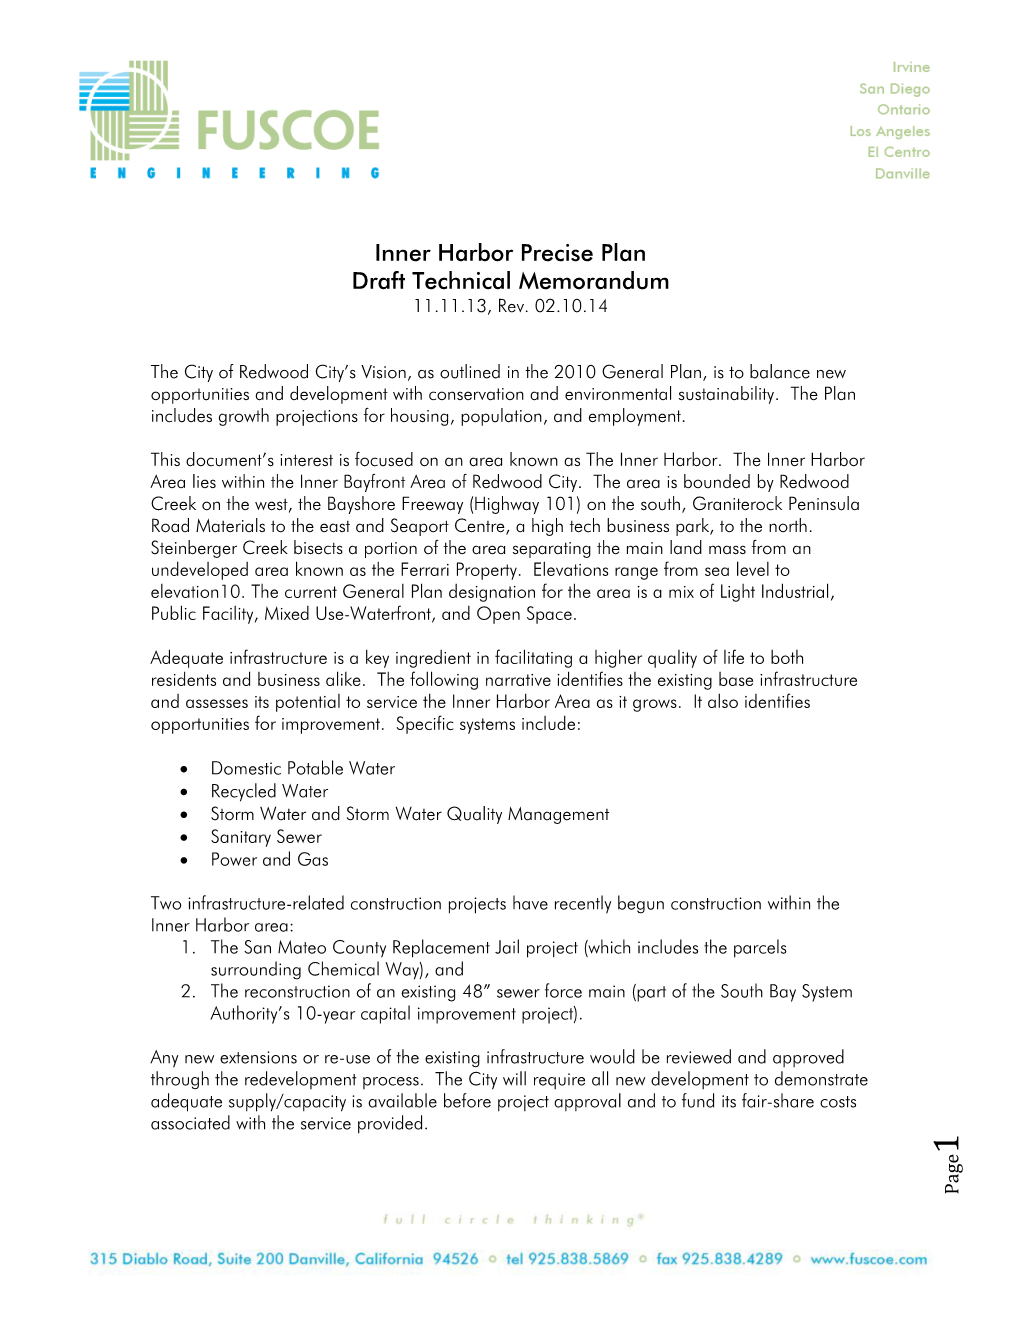 Inner Harbor Precise Plan Draft Technical Memorandum 11.11.13, Rev